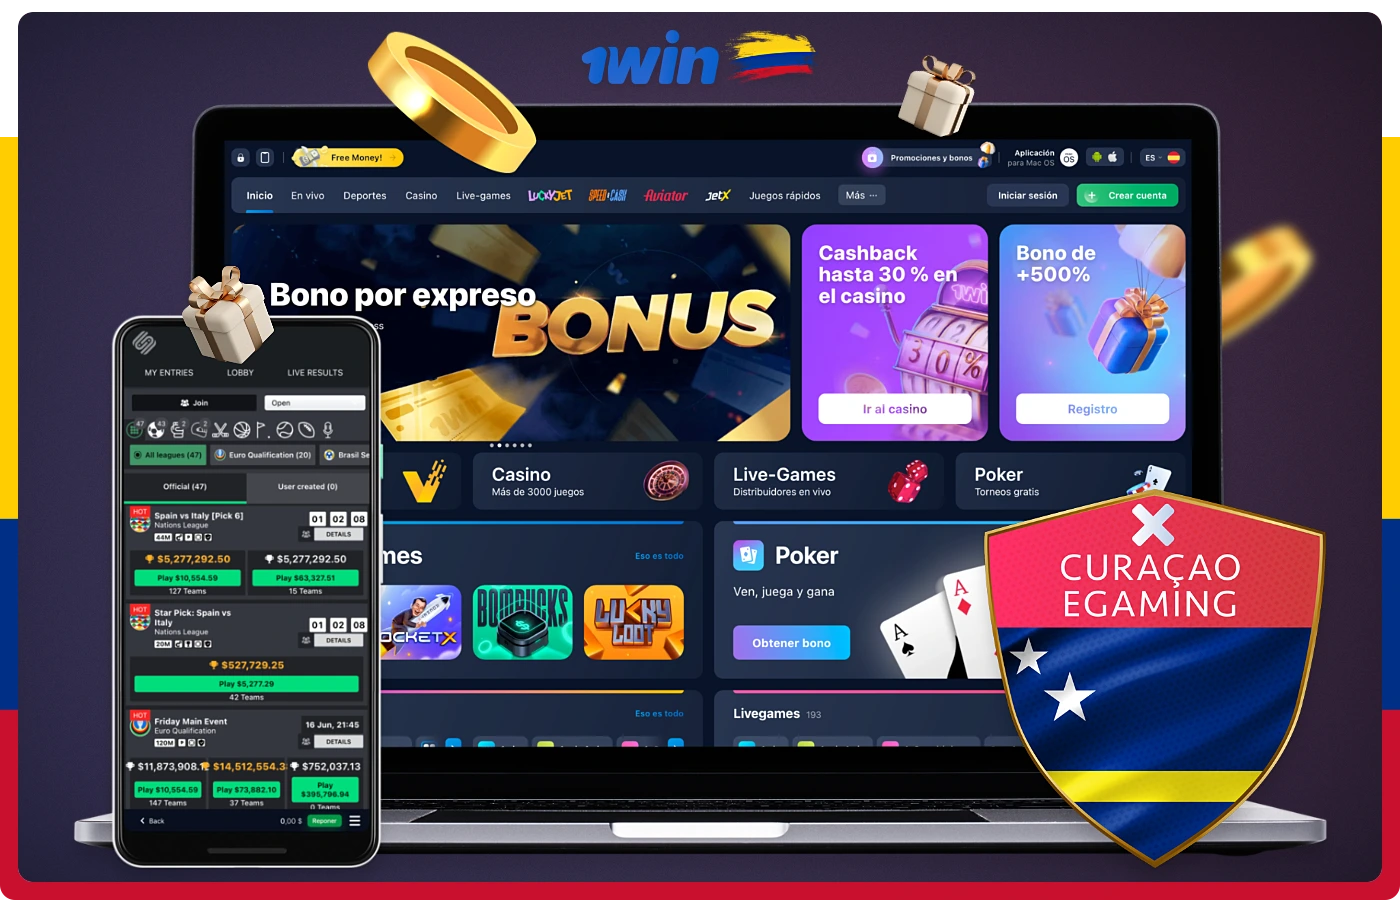 1win ofrece sus servicios en Colombia bajo licencia